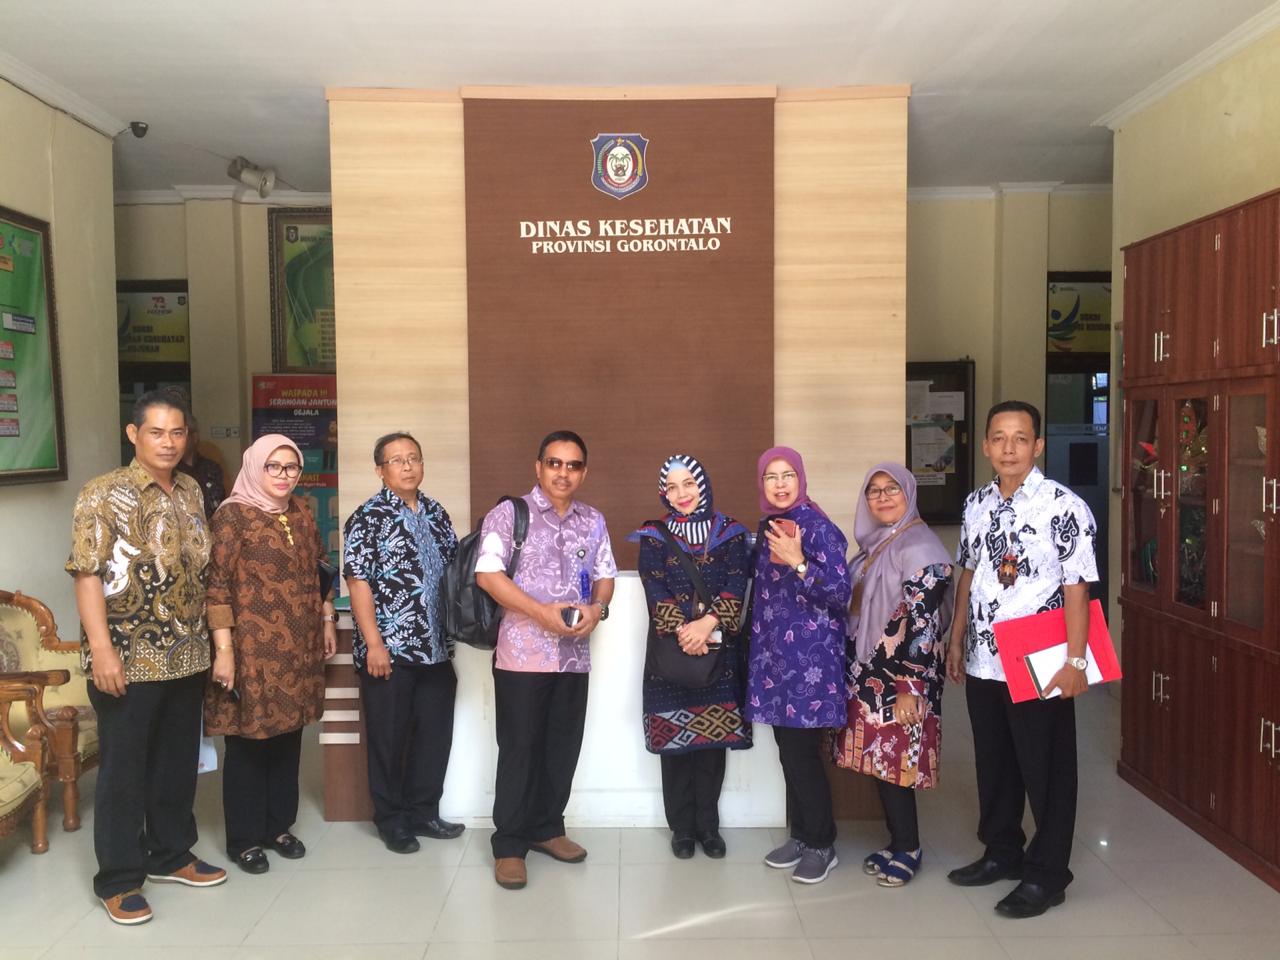 Preview Bagian Hukum mengikuti kegiatan kaji banding ke Dinas Kesehatan Provinsi Gorontalo bersama DPRD Kota Bandung, 25 Juni 2019